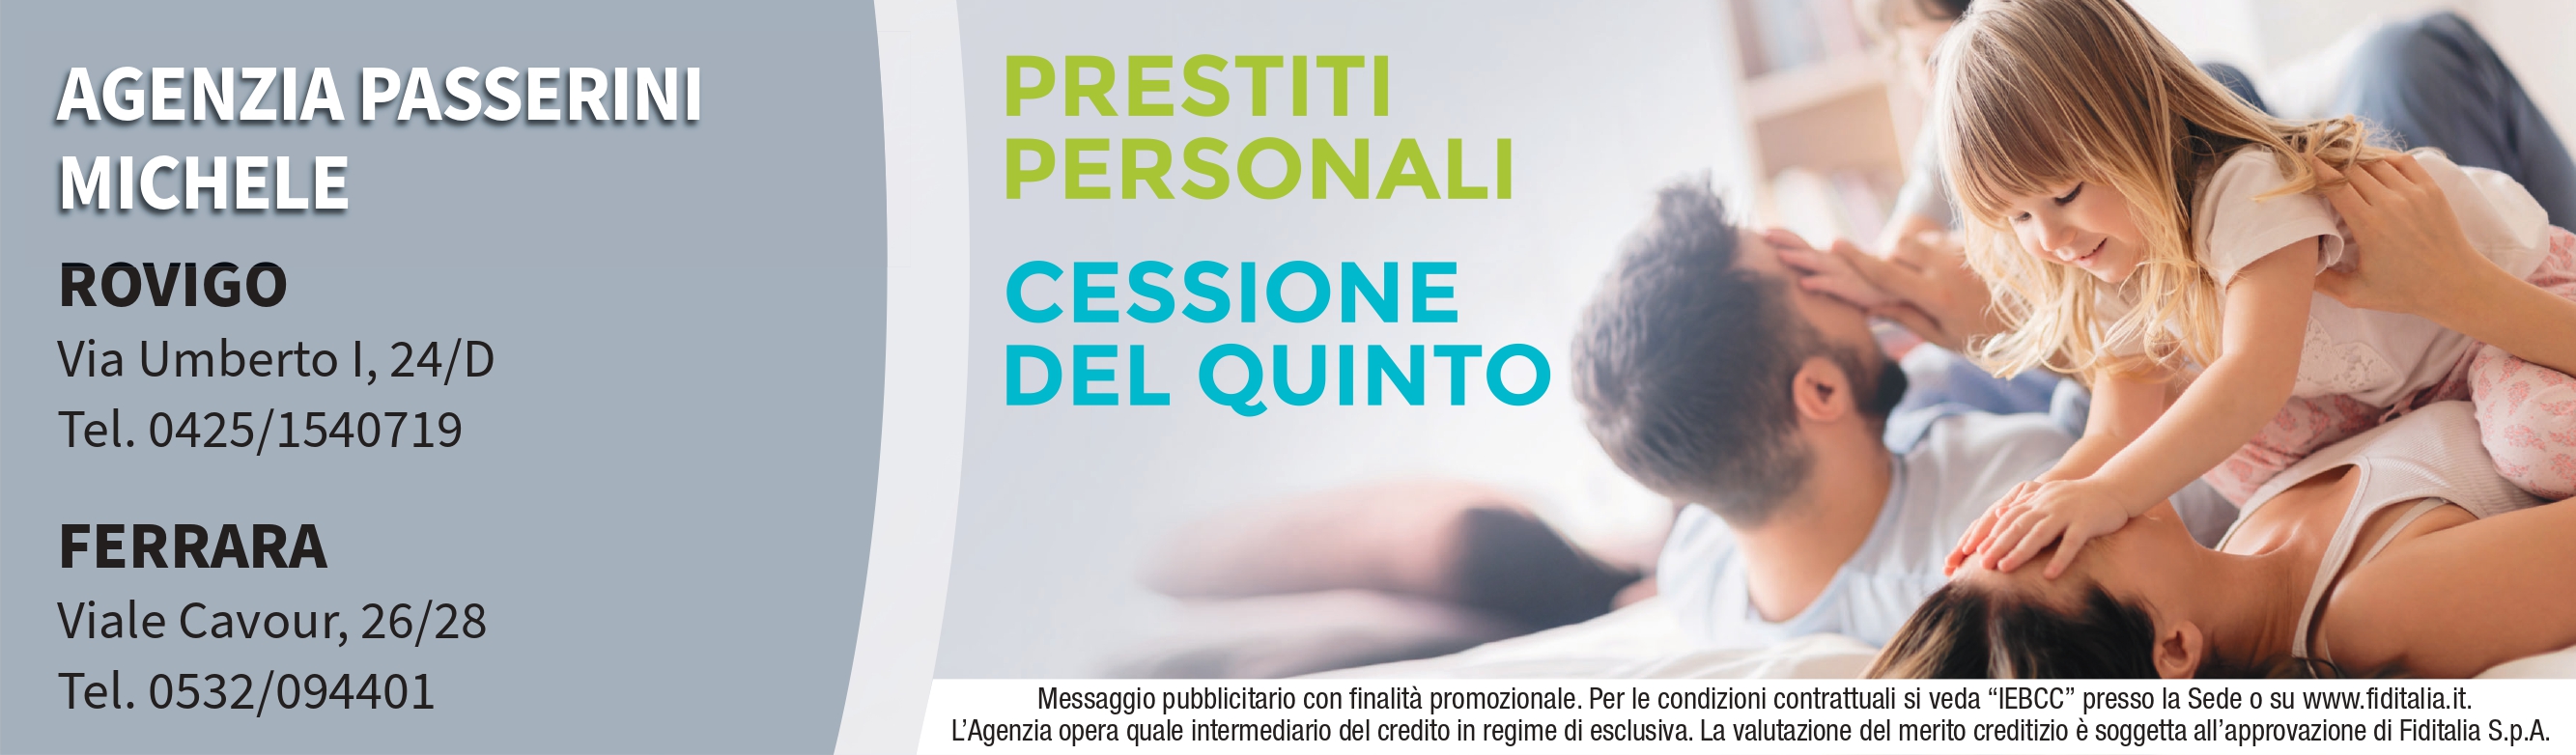 Contatti Agenzia Michele Passerini filiali Fiditalia - Prestiti personali, Cessione del quinto